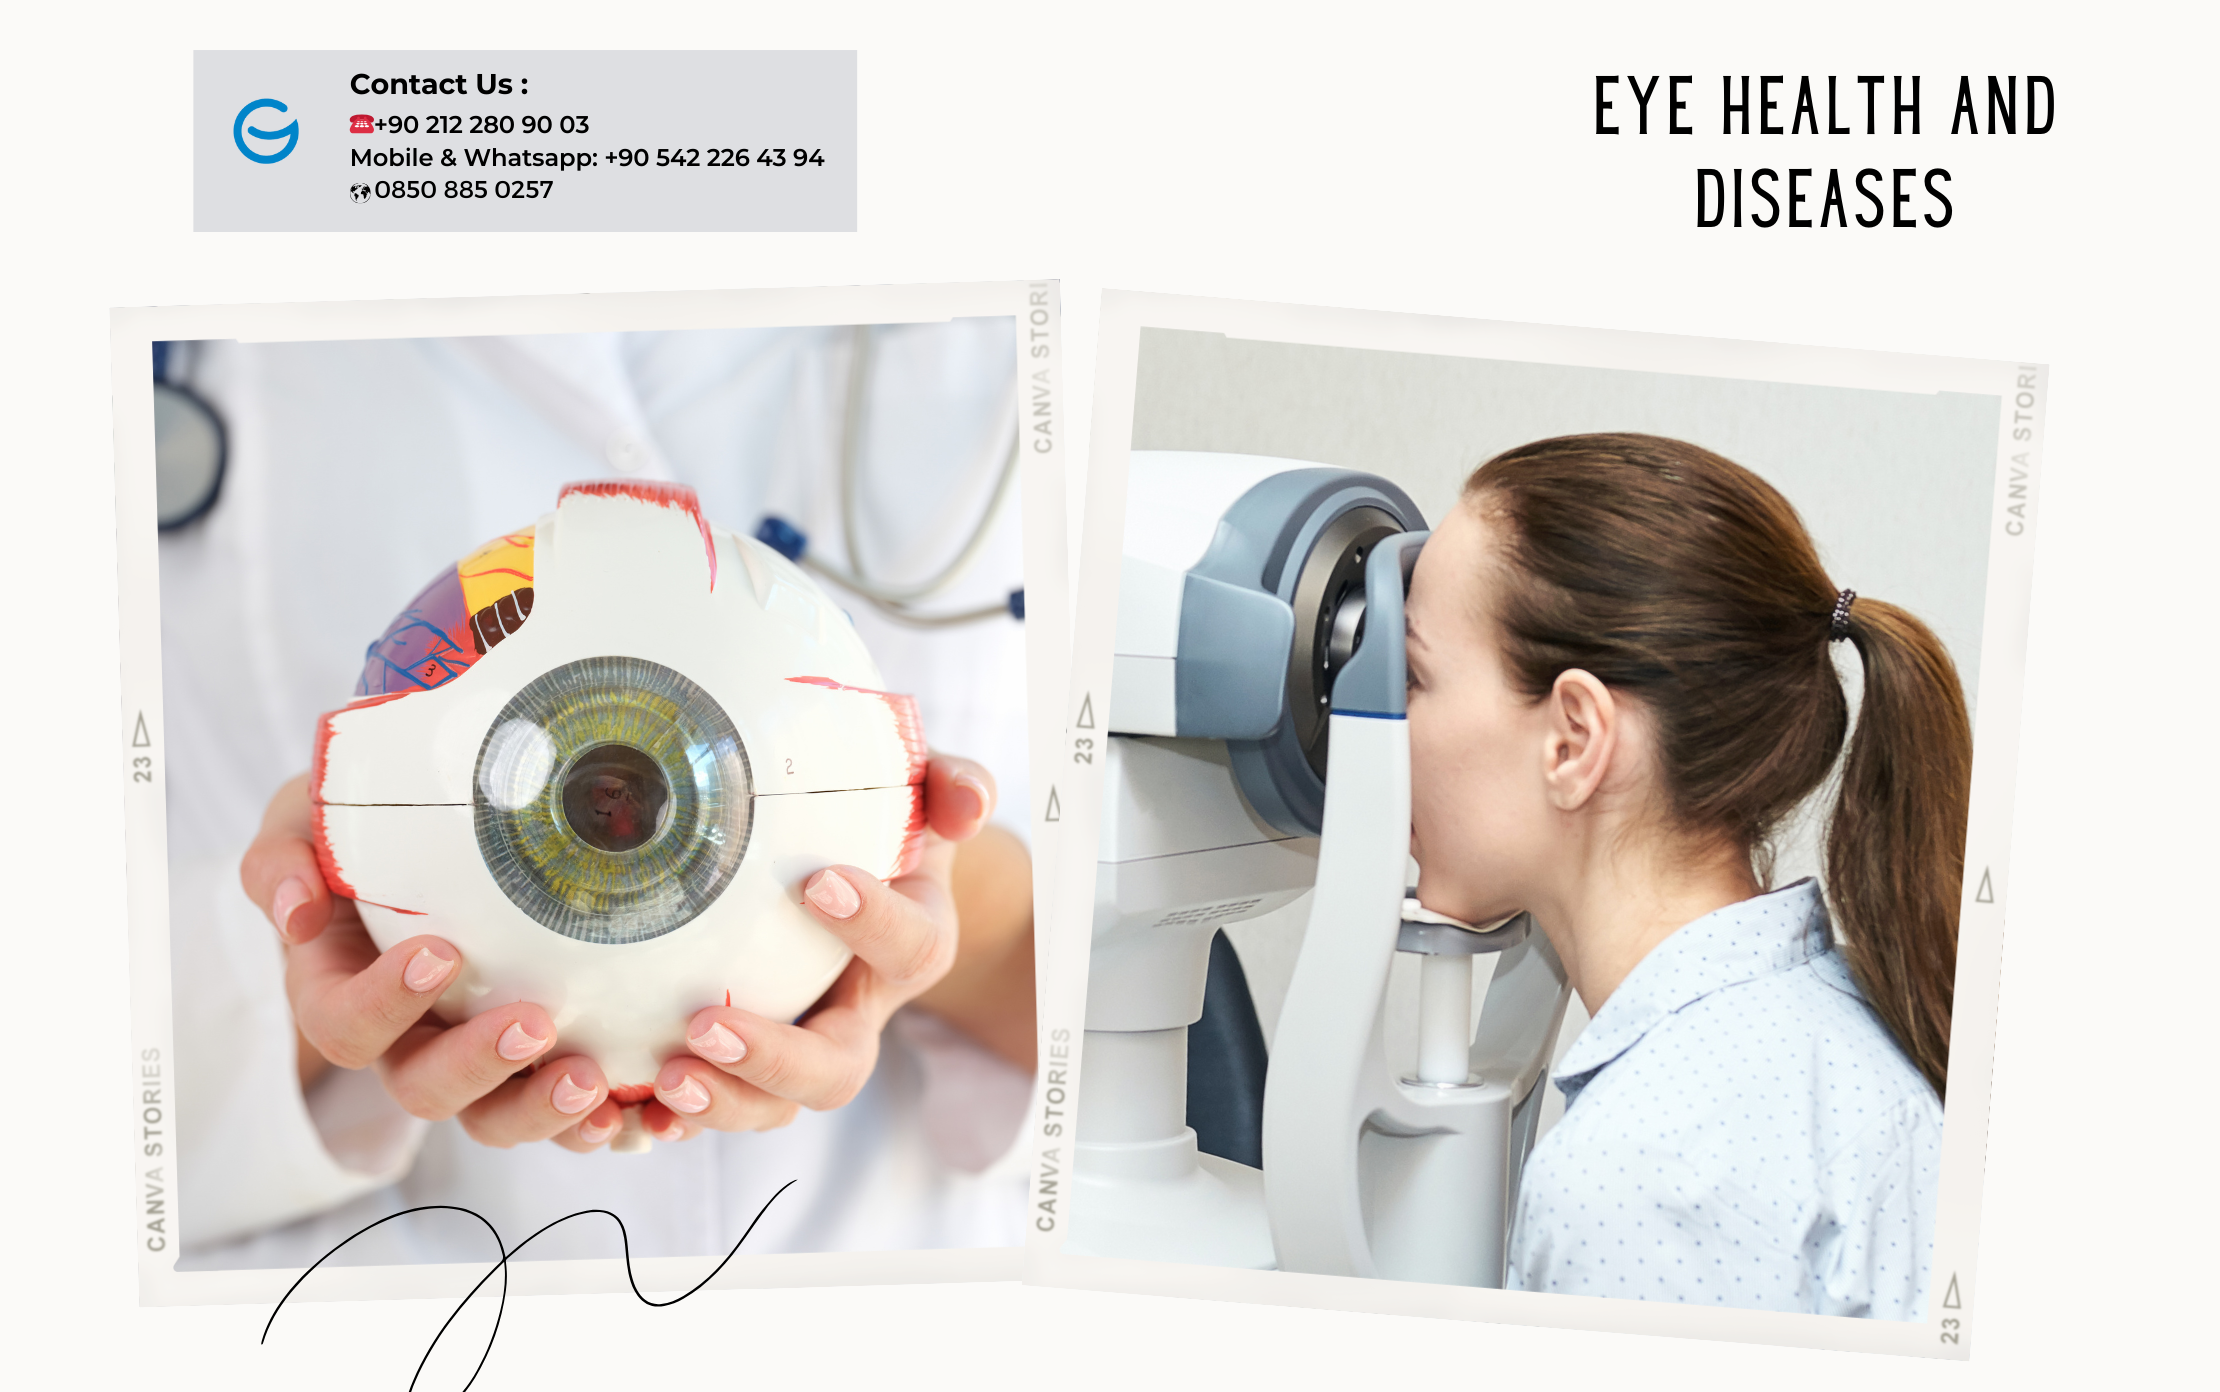 Eye Health & Diseases in Turkey